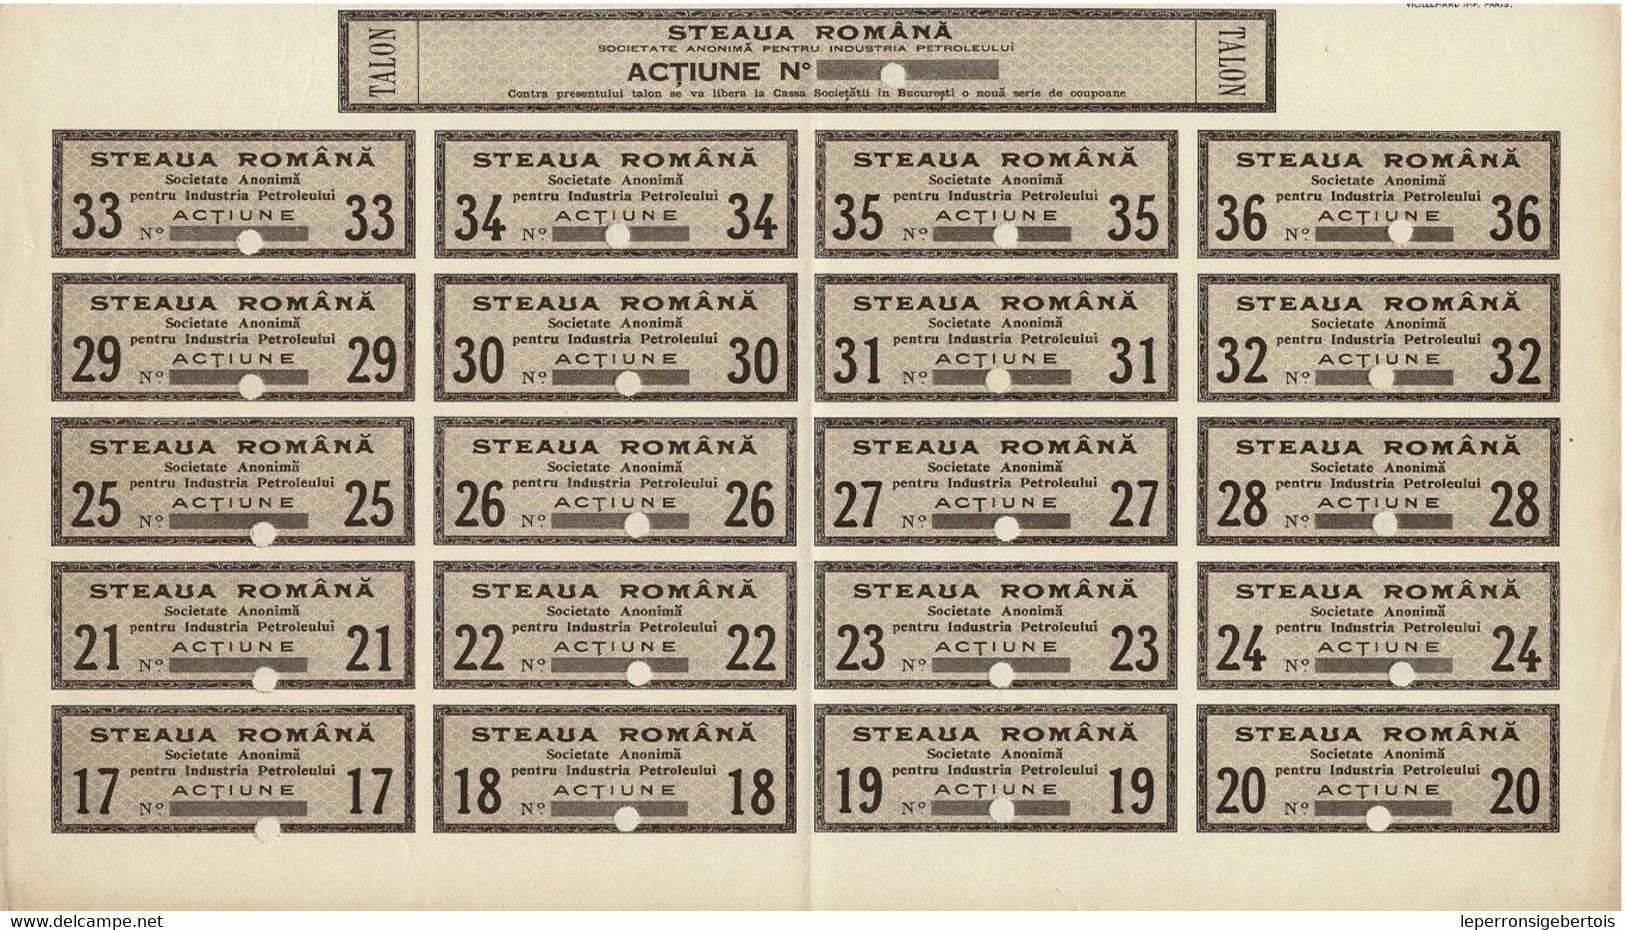 Action Ancienne - Etoile Roumaine S.A. Pour L' Industrie Du Pétrole - Steaua Romana - Titre De 1921 Uncirculed - Oil